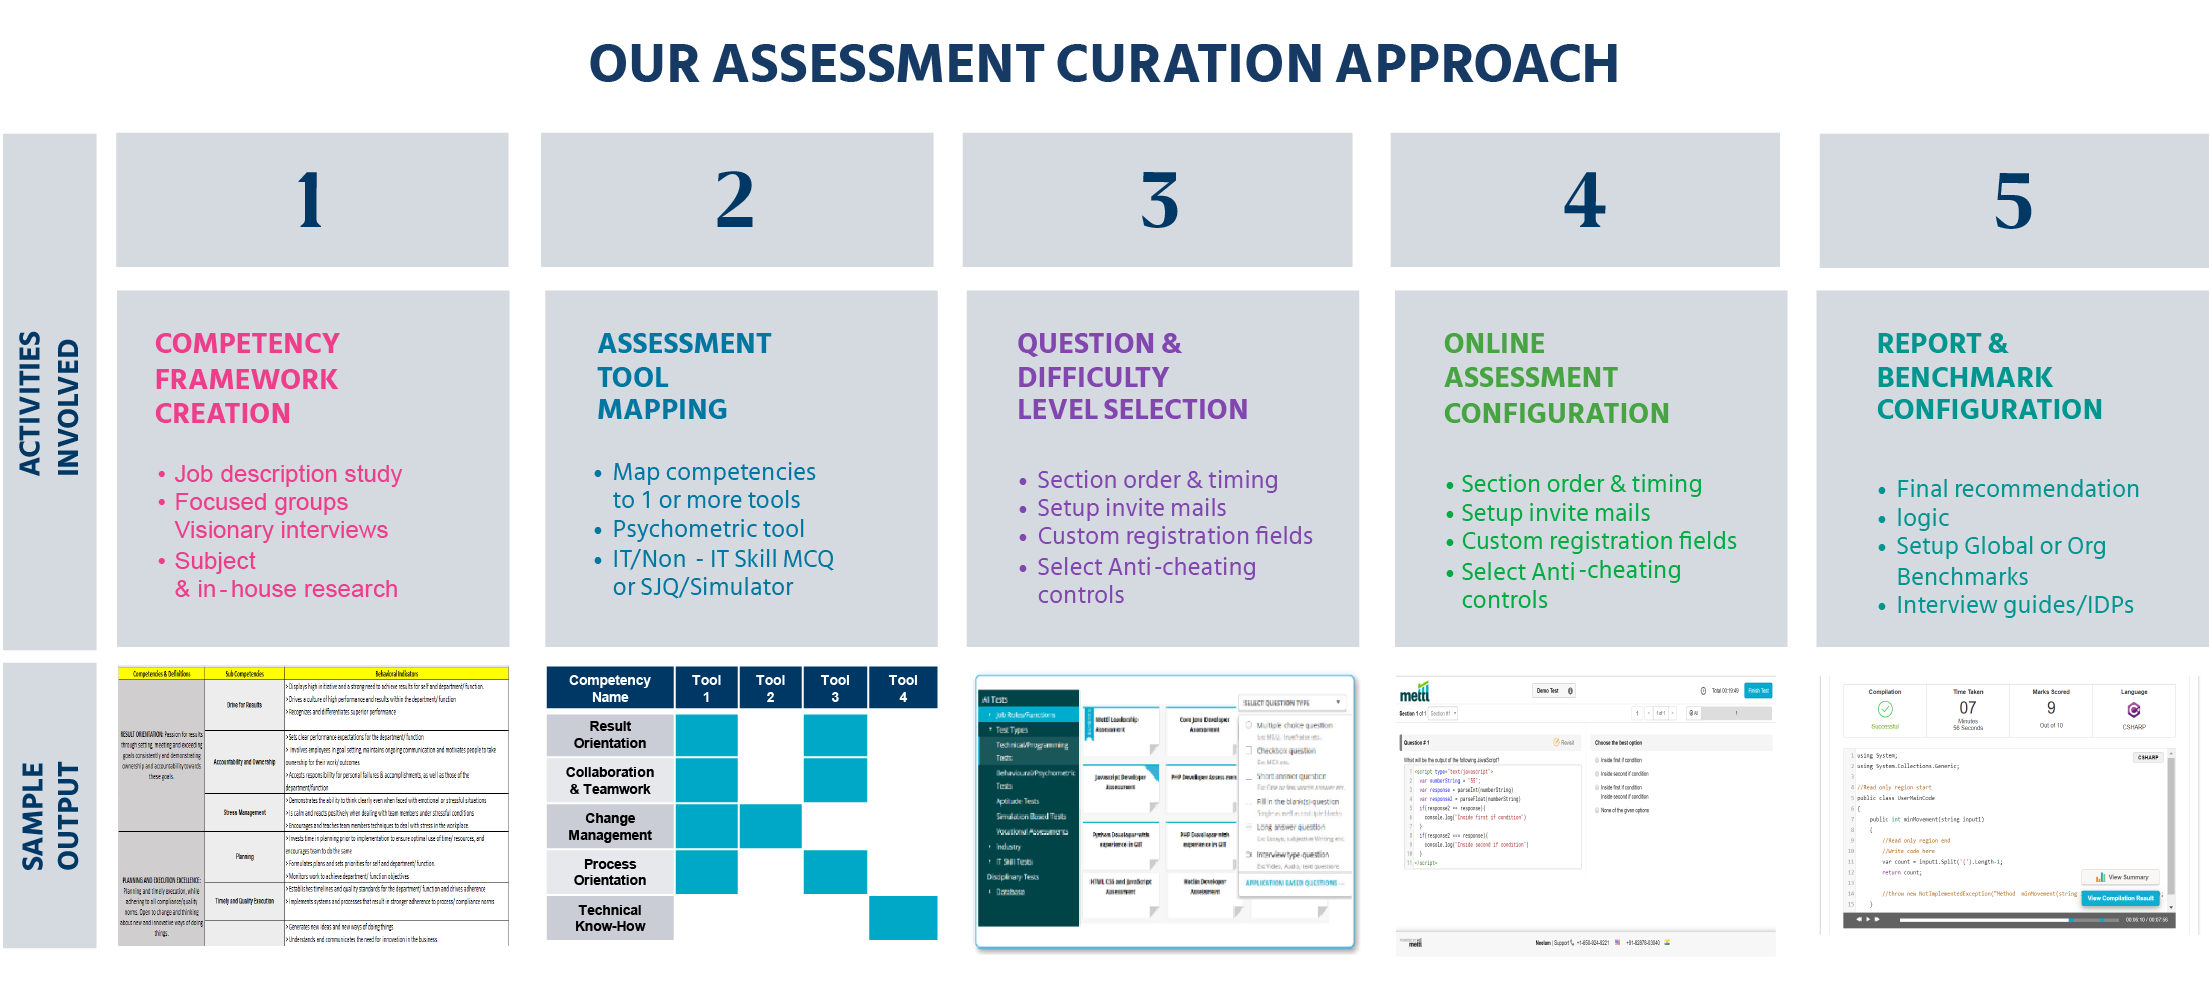 Mercer| Mettl’s assessment creation approach